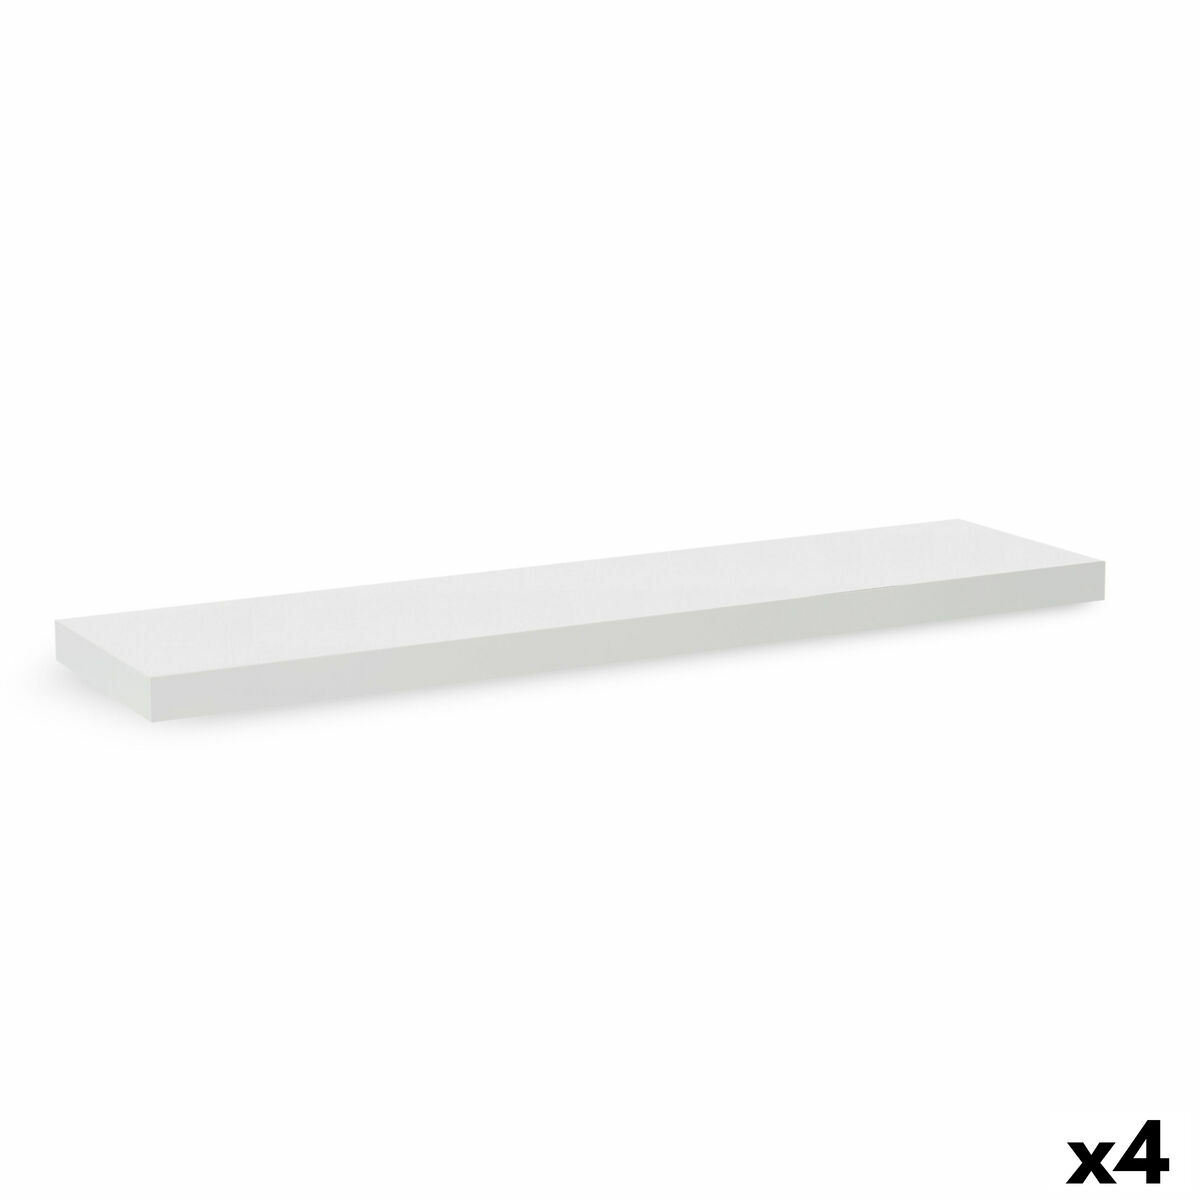 Mensole Confortime Legno MDF Bianco 23,5 x 80 x 3,8 cm (4 Unità)